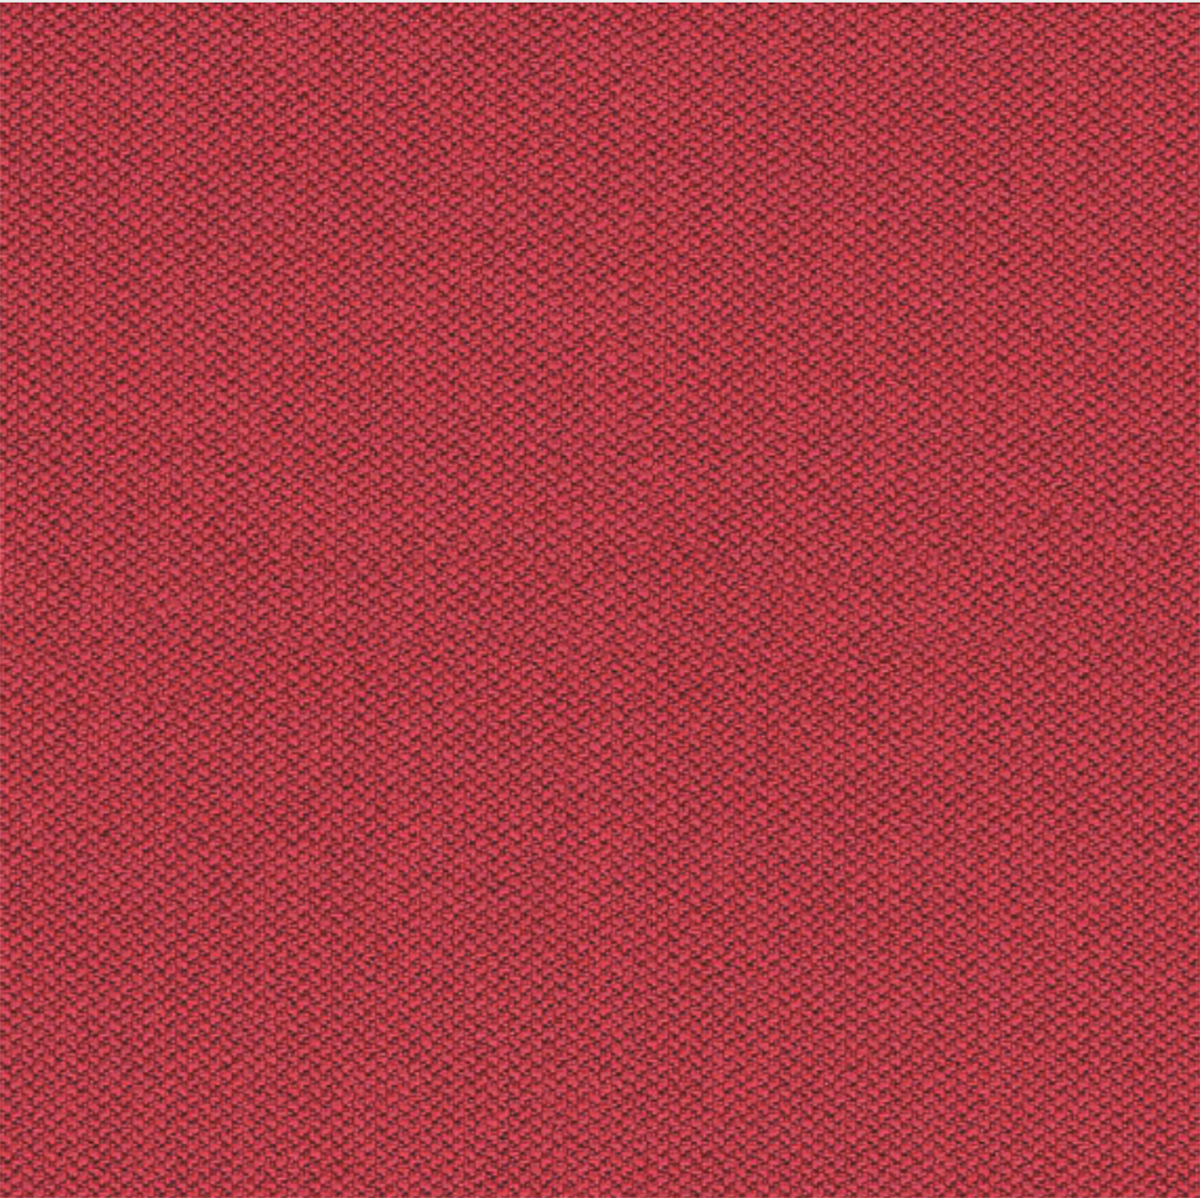 Camira Era Red Fabric [+$126.00]